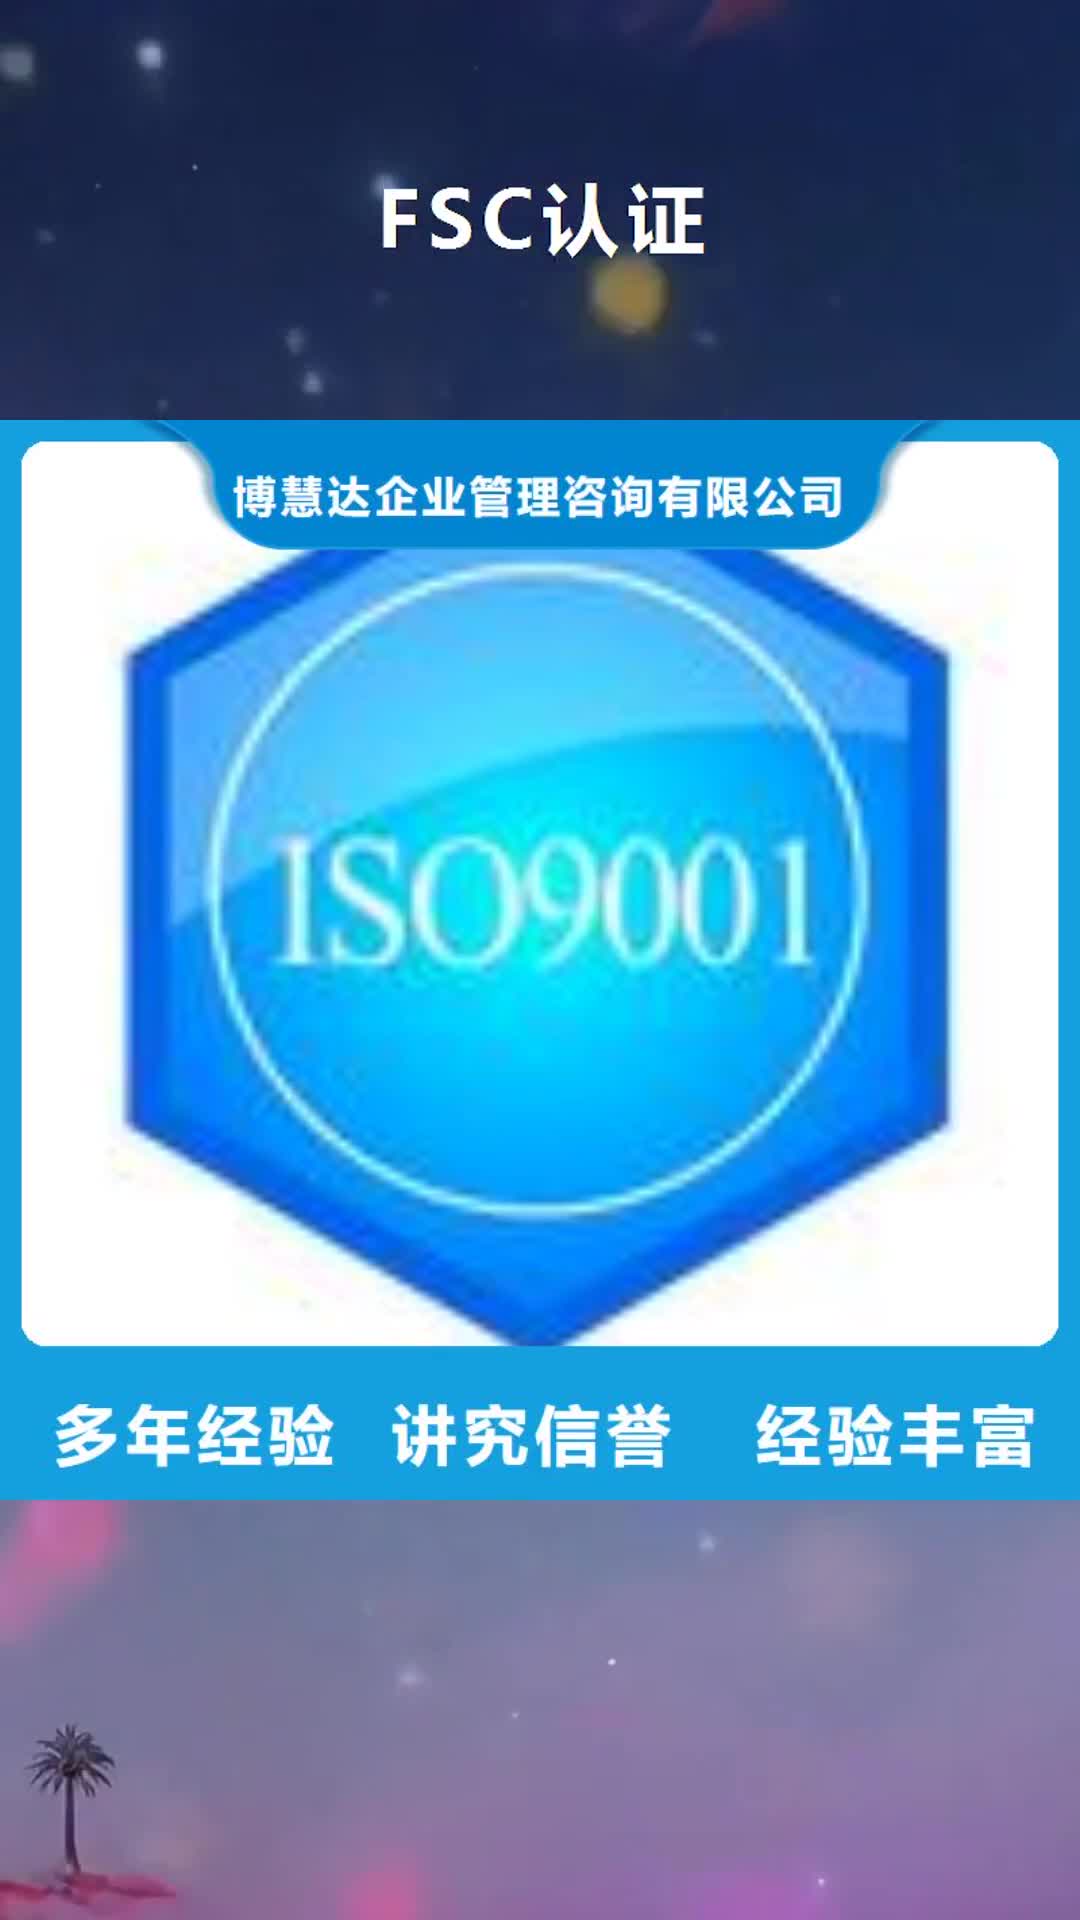 石家庄【FSC认证】-知识产权认证/GB29490专业品质